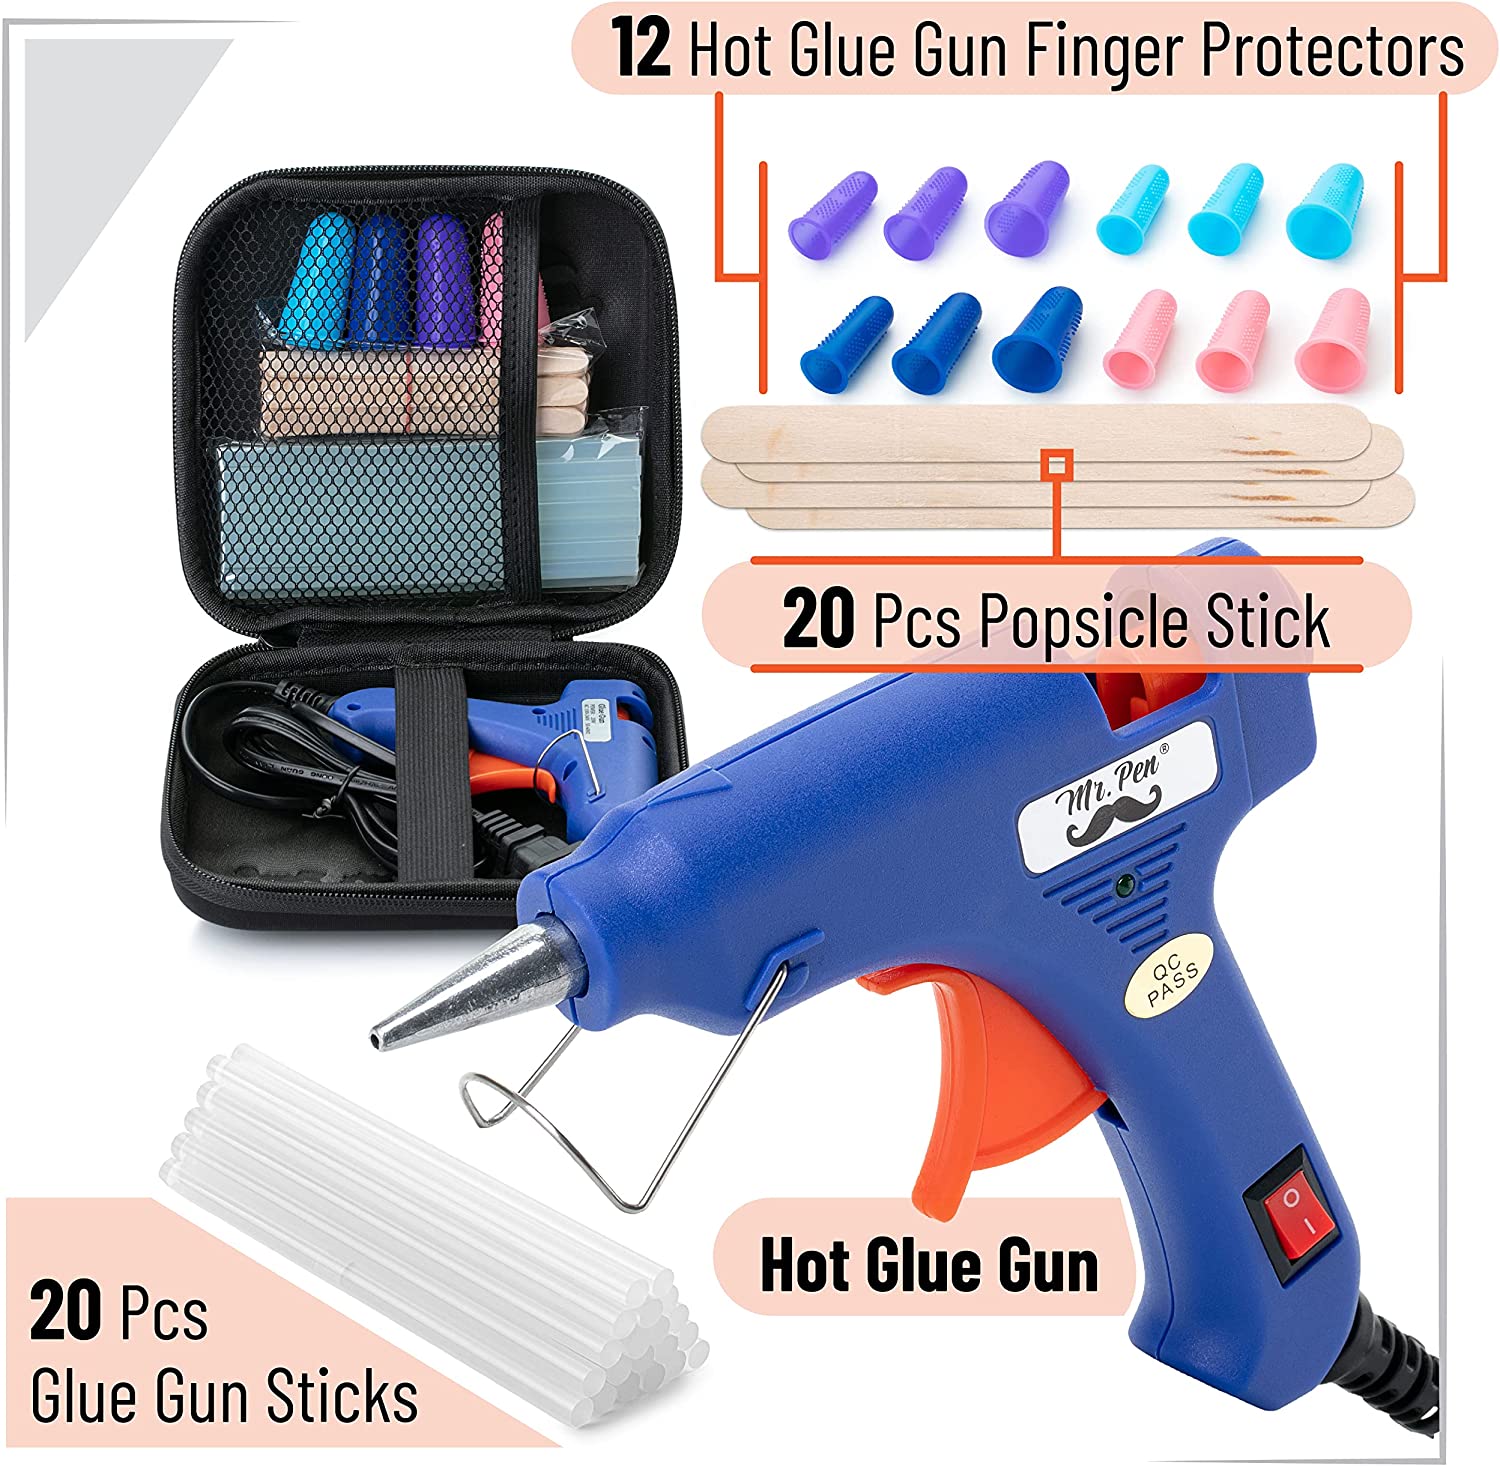 Mr Pen- Glue Gun, Hot Glue Guns, with 10 Glue Gun Sticks, Glue Gun Kit, Mini Glue Gun, Mini Hot Glue Gun, Hot Melt Glue Gun, Craft Glue Gun, Hot Glue